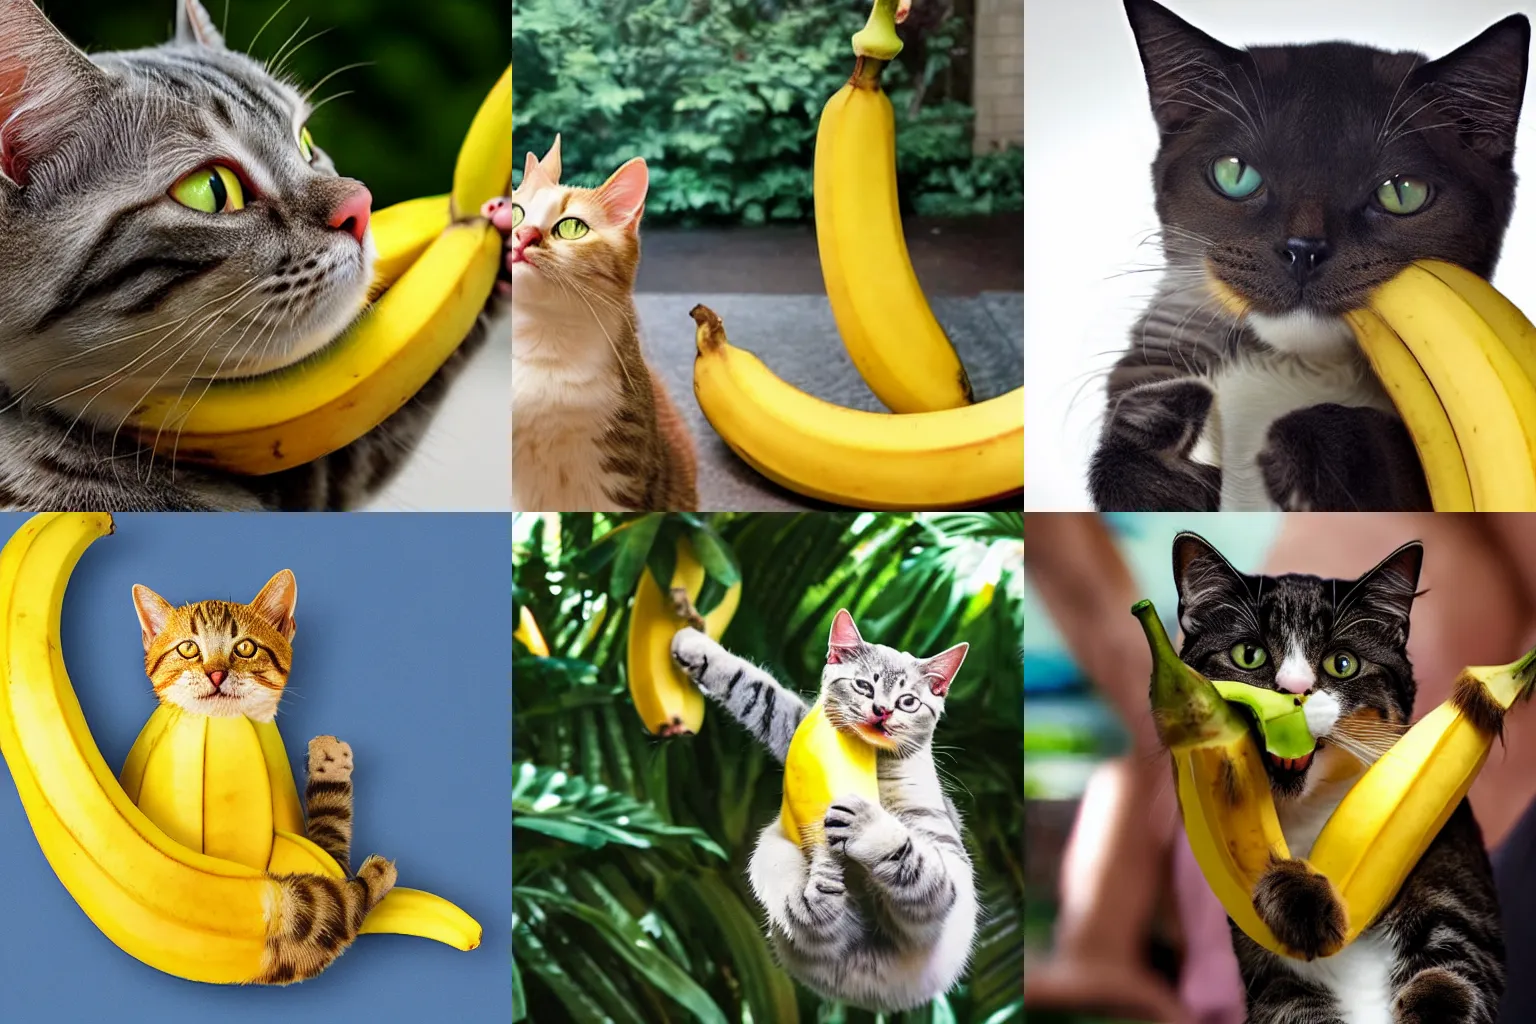 Prompt: cat in a banana dancing